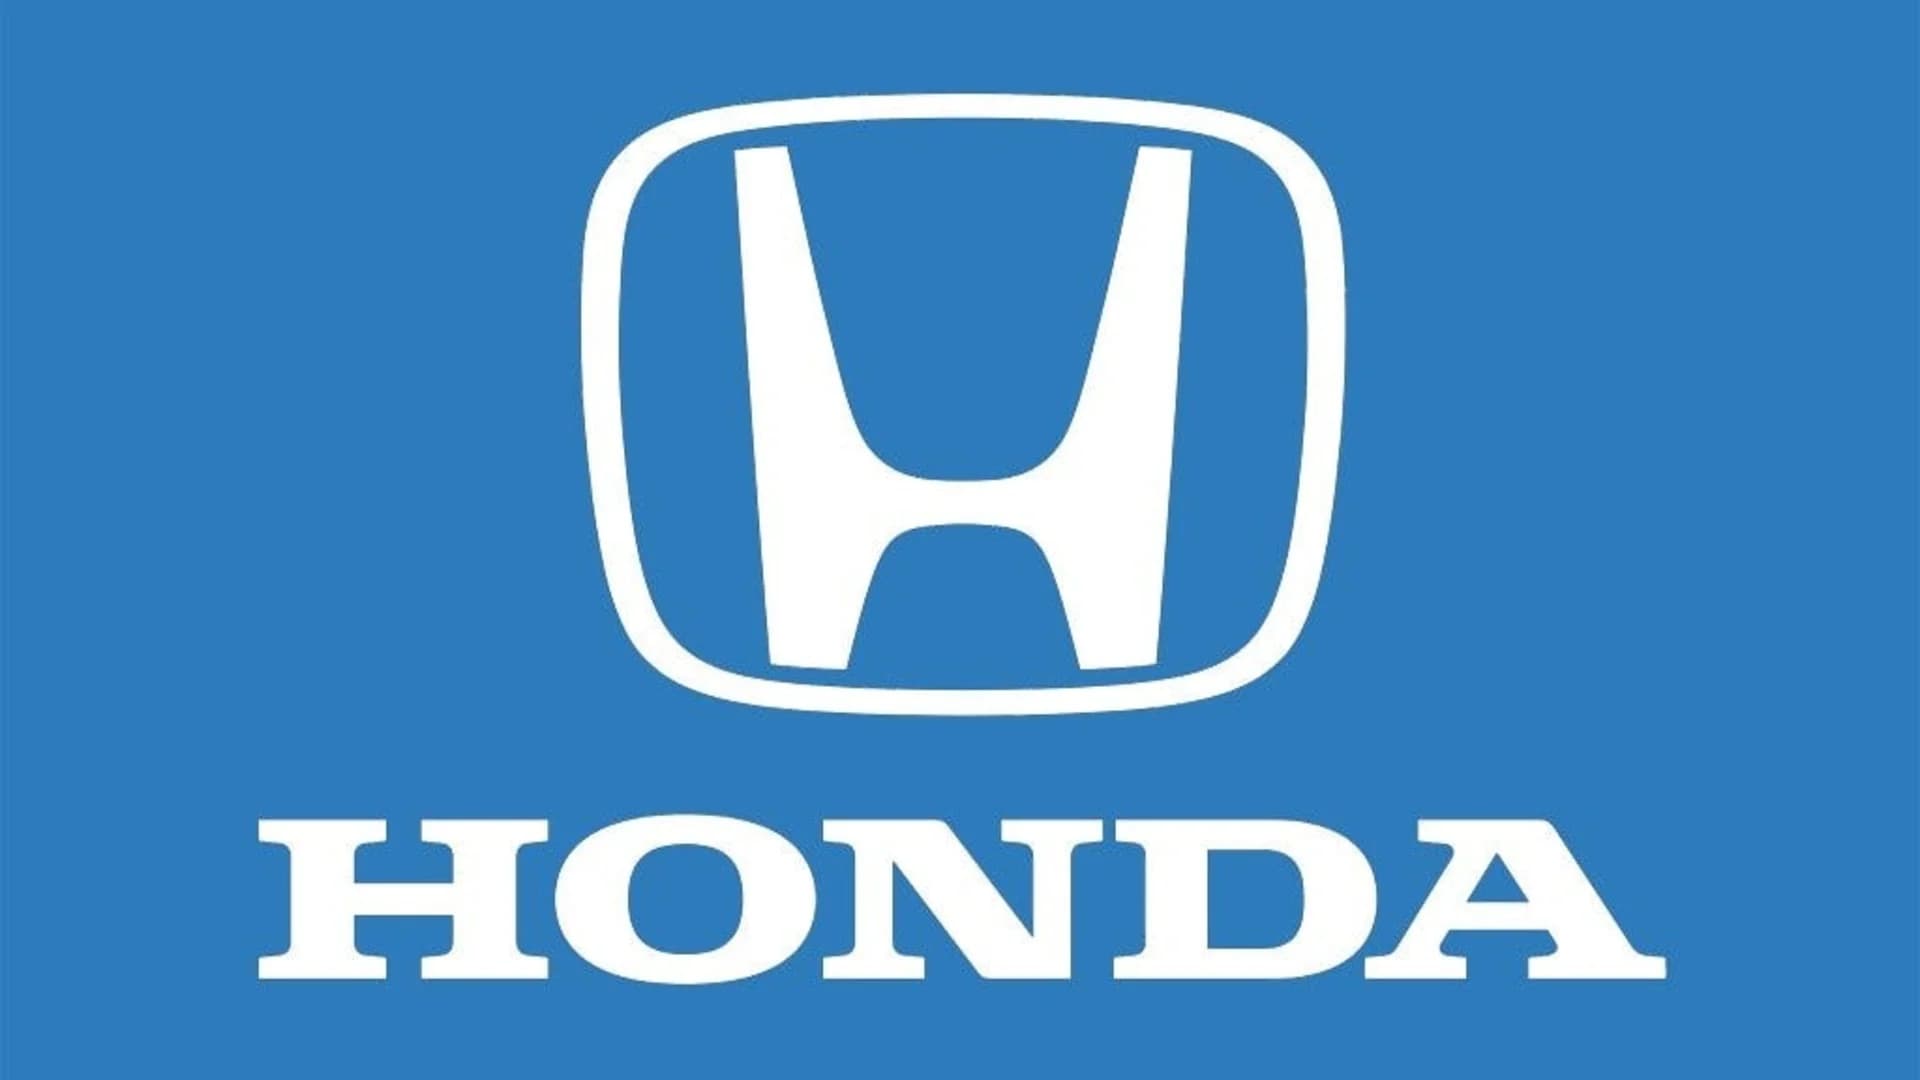 Honda recalls 1.2M more vehicles with dangerous air bags